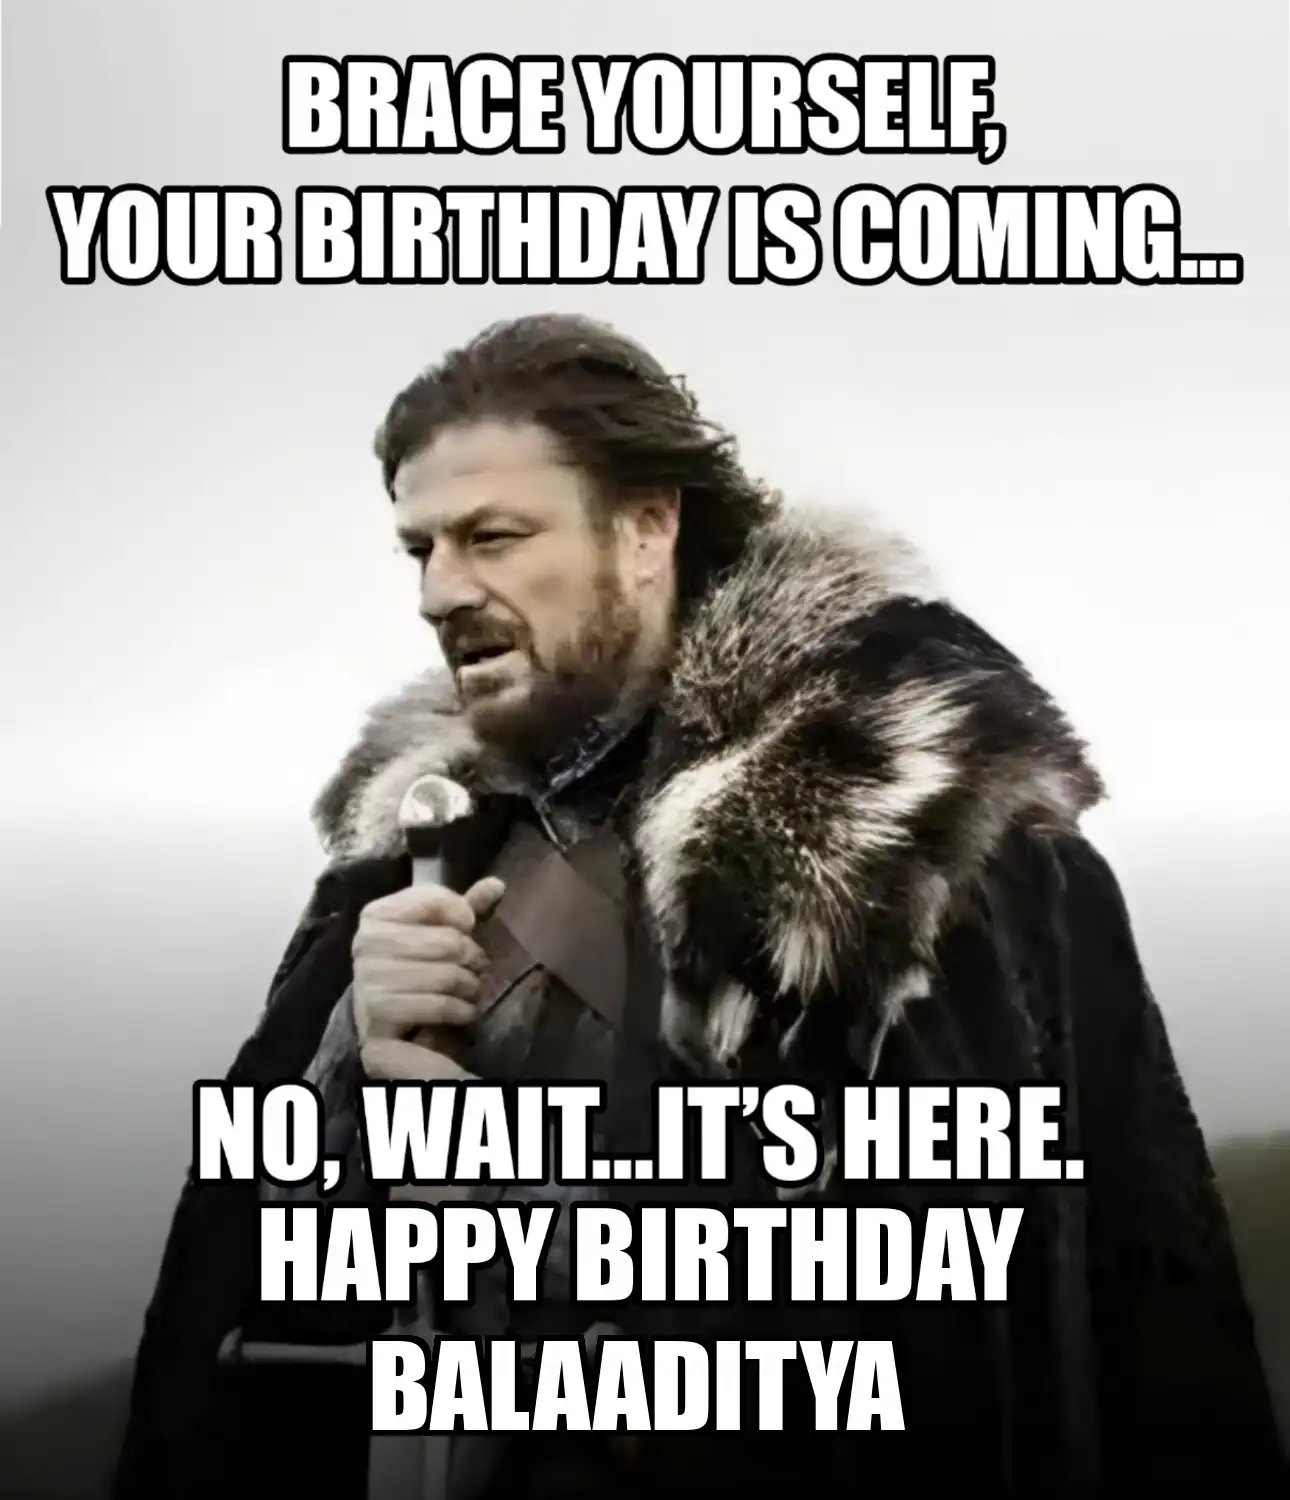 Happy Birthday Balaaditya Brace Yourself Your Birthday Is Coming Meme